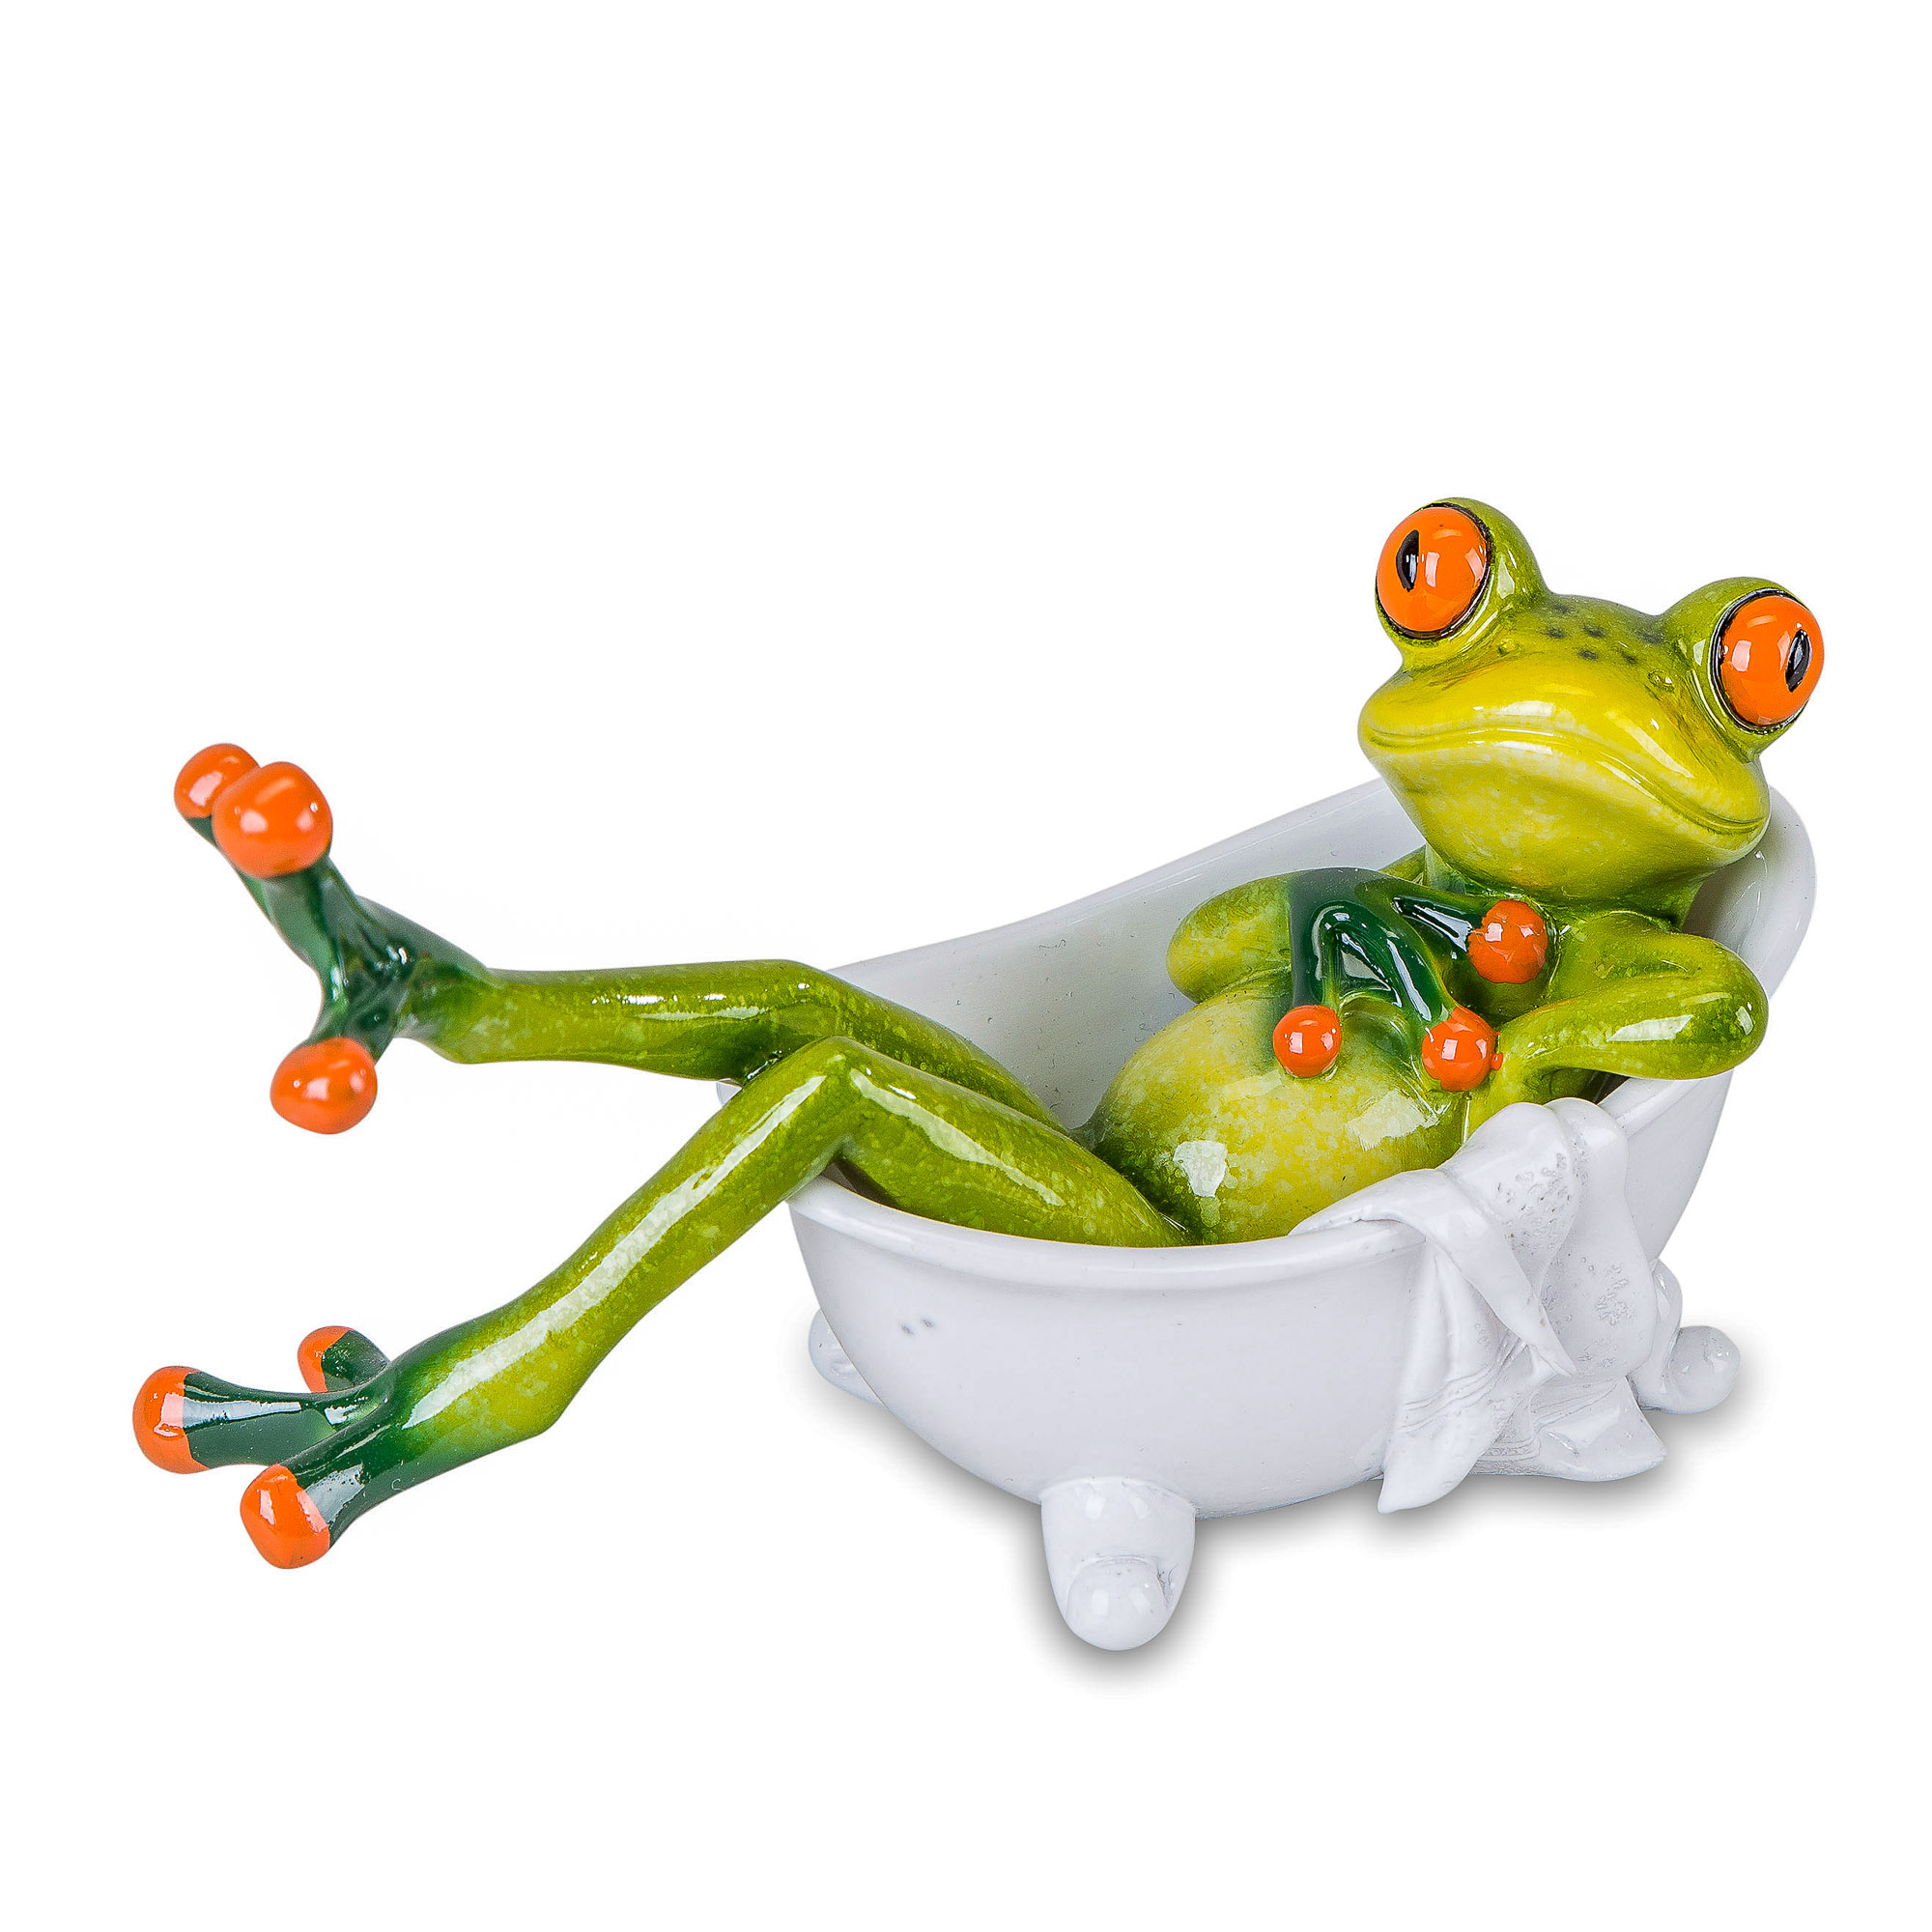 717849 Frosch Figur Set  hellgrün 16cm aus Kunststein mit witzigen Details 